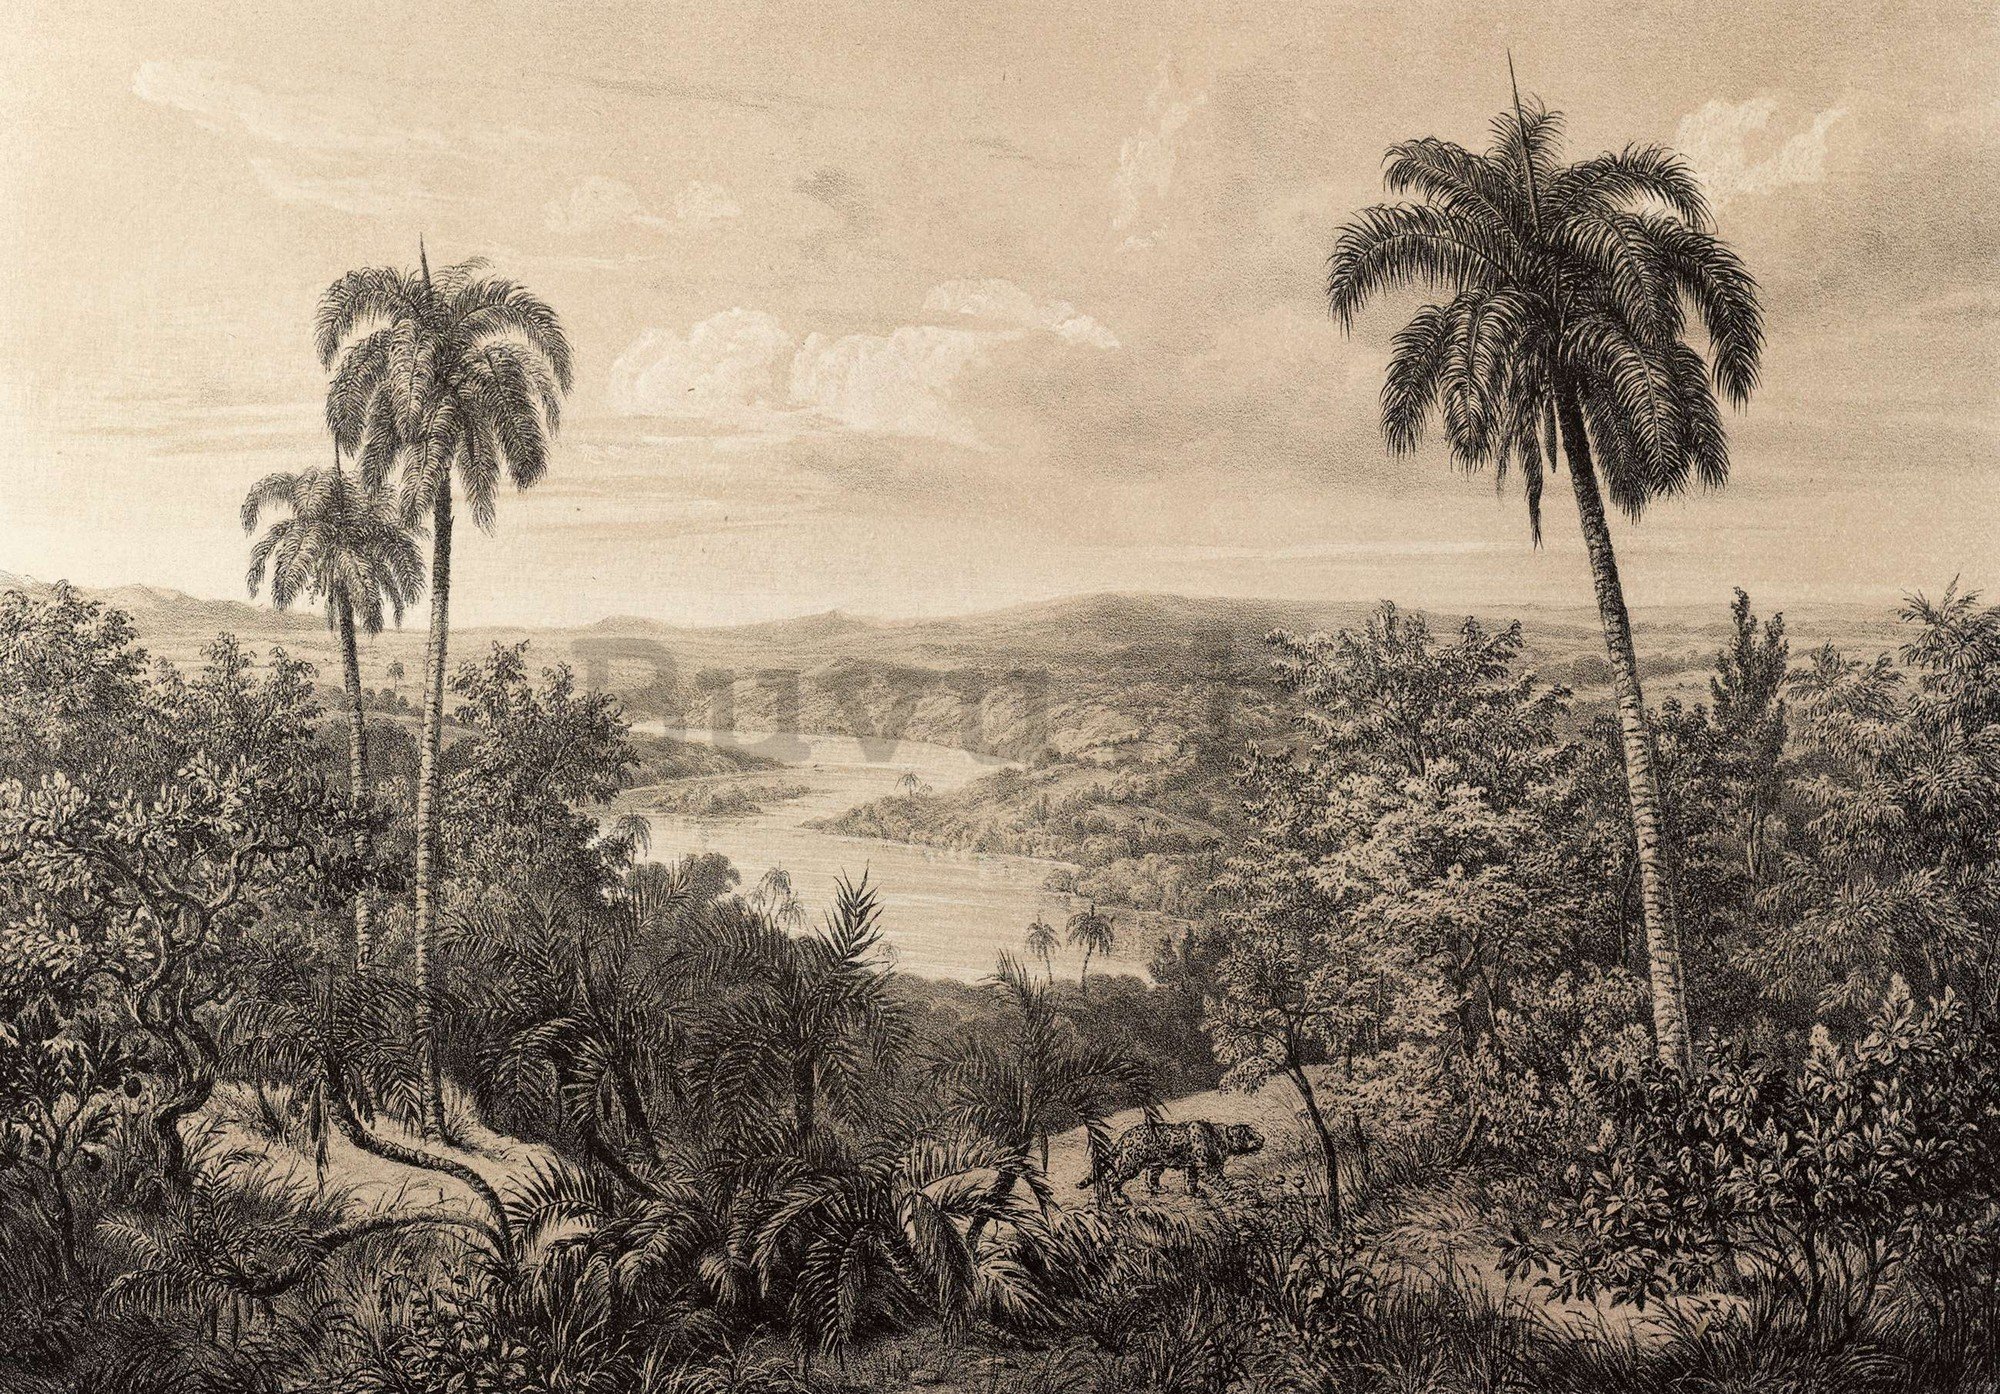 Vlies foto tapeta: Rijeka Amazon, litografija - 416x254 cm